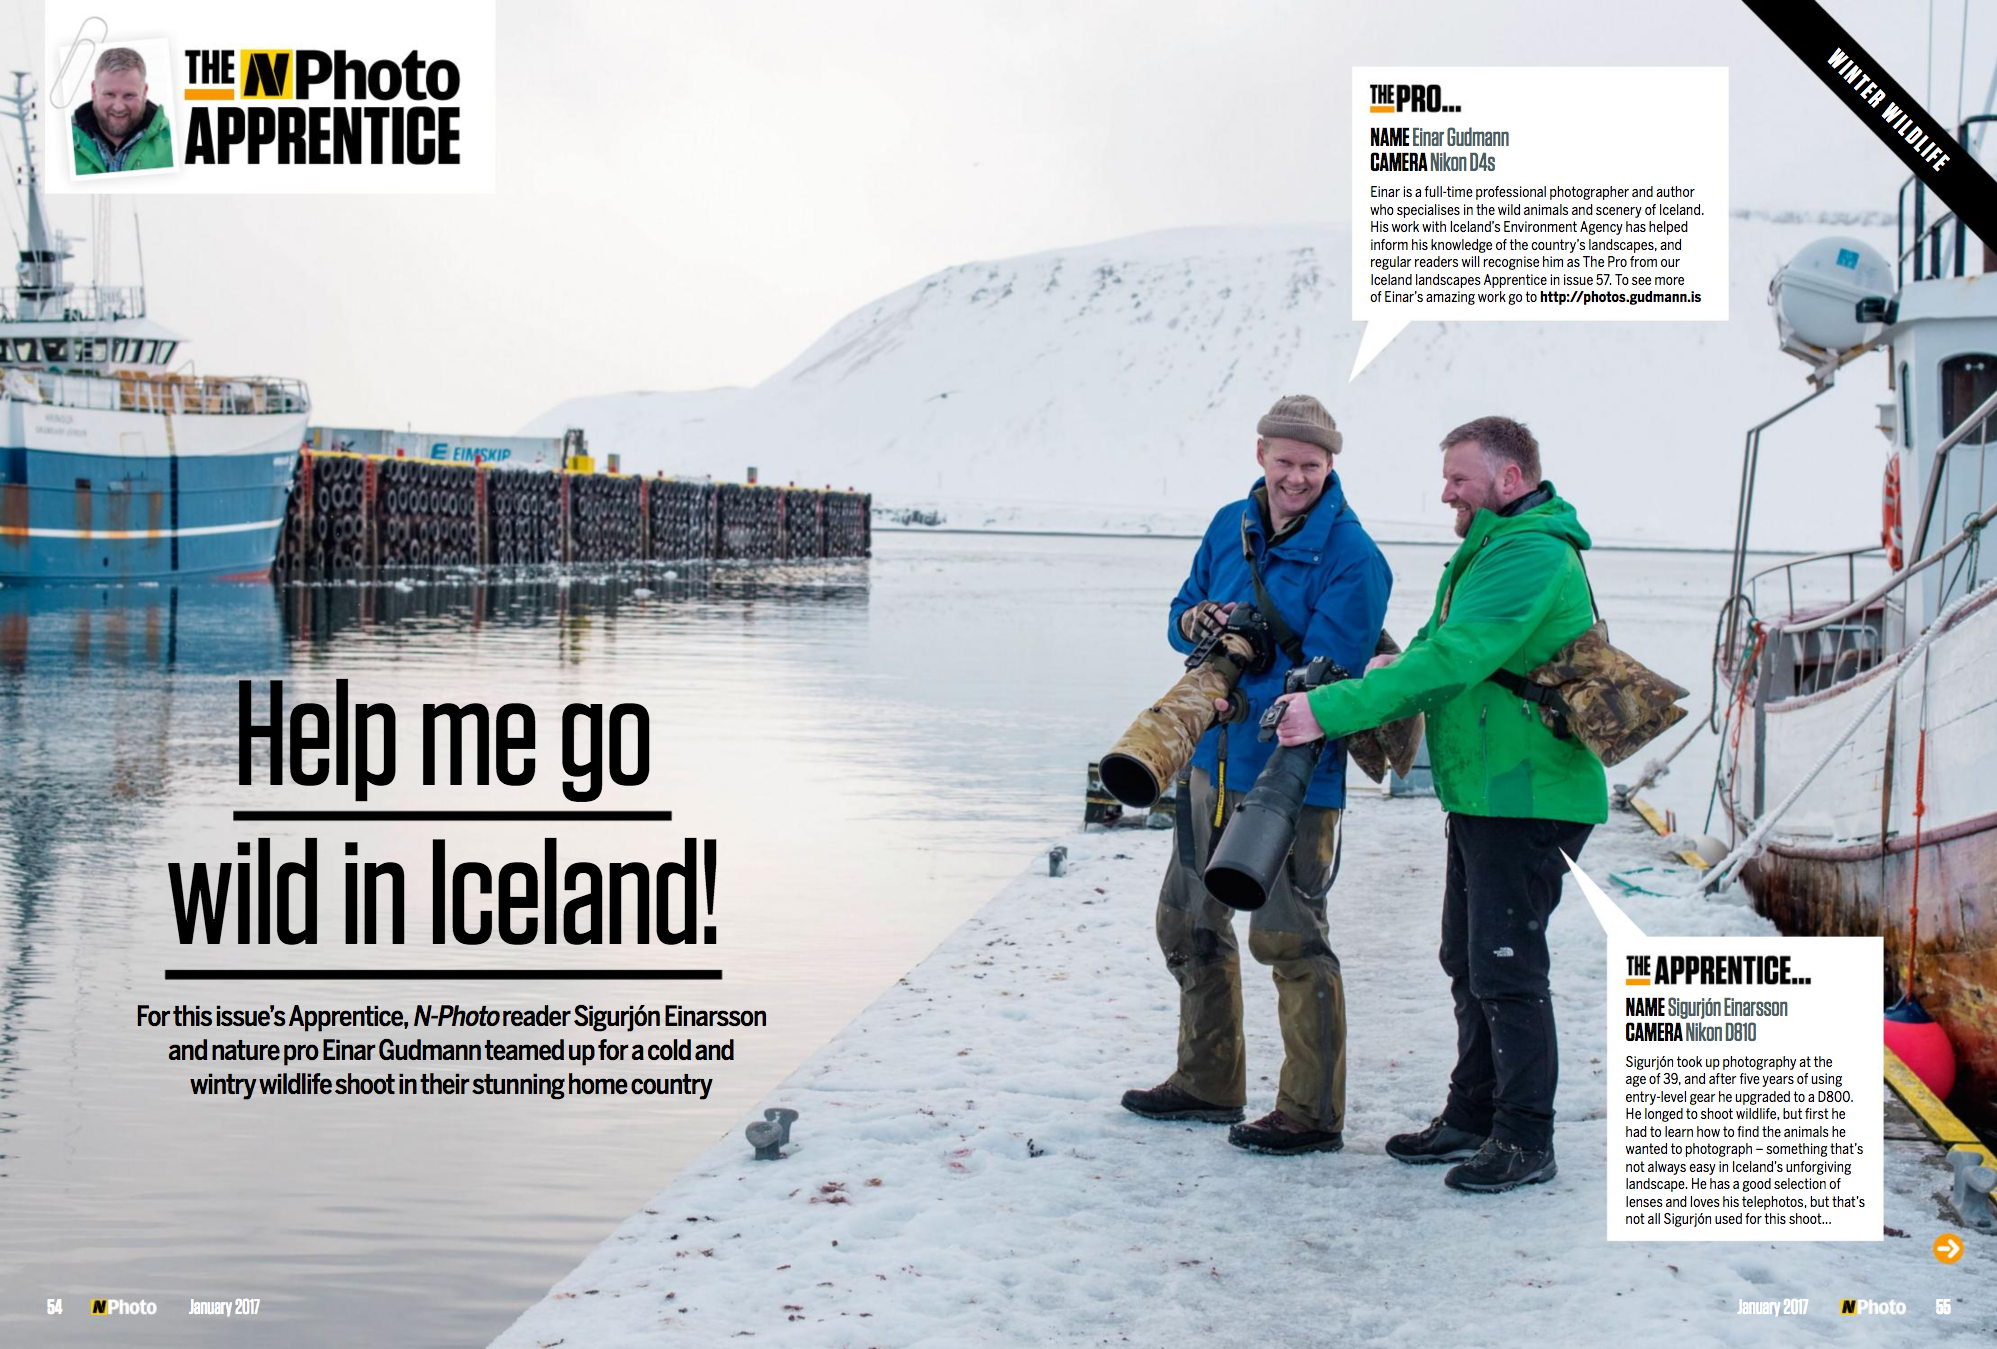 Nphoto - go wild in Iceland - Einar Gudmann